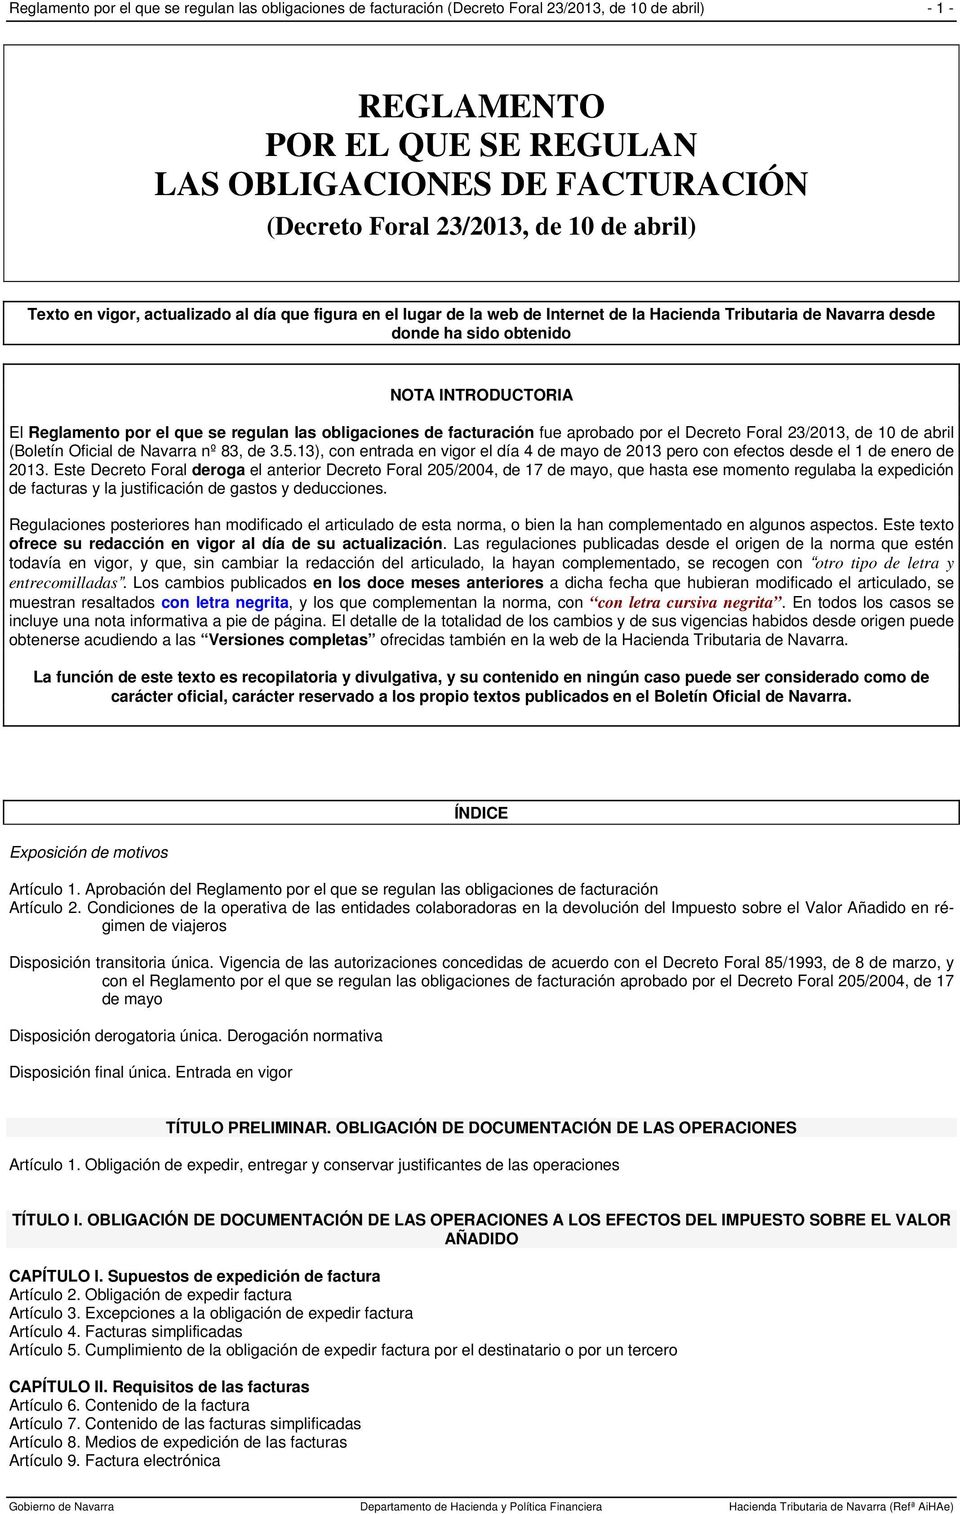 el que se regulan las obligaciones de facturación fue aprobado por el Decreto Foral 23/2013, de 10 de abril (Boletín Oficial de Navarra nº 83, de 3.5.